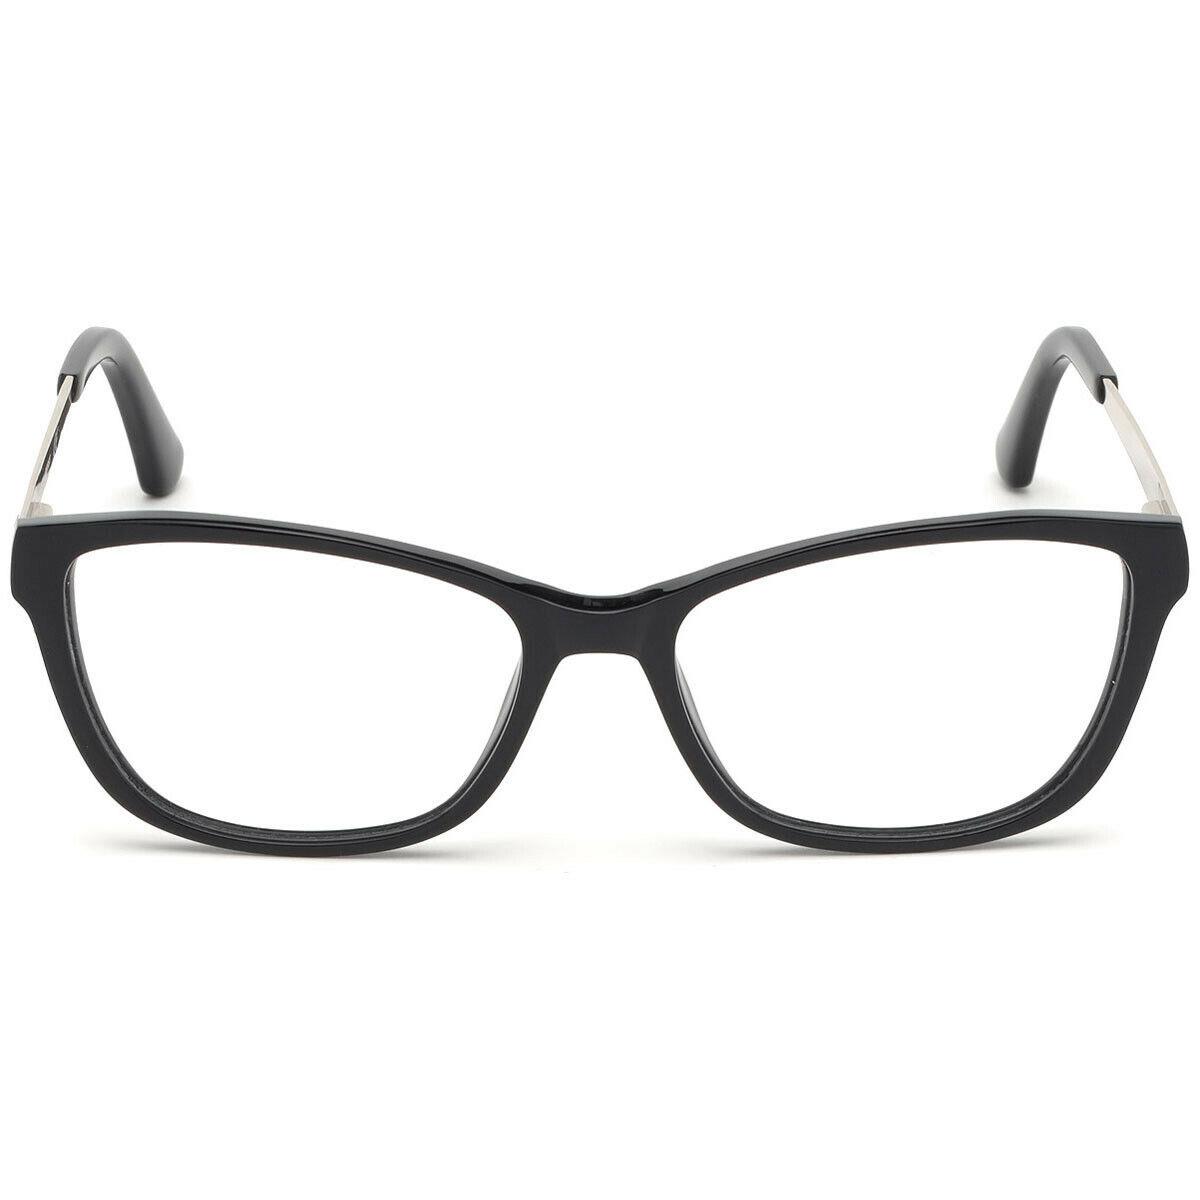 Guess eyeglasses  - Black , Black Frame, Clear Lens 0